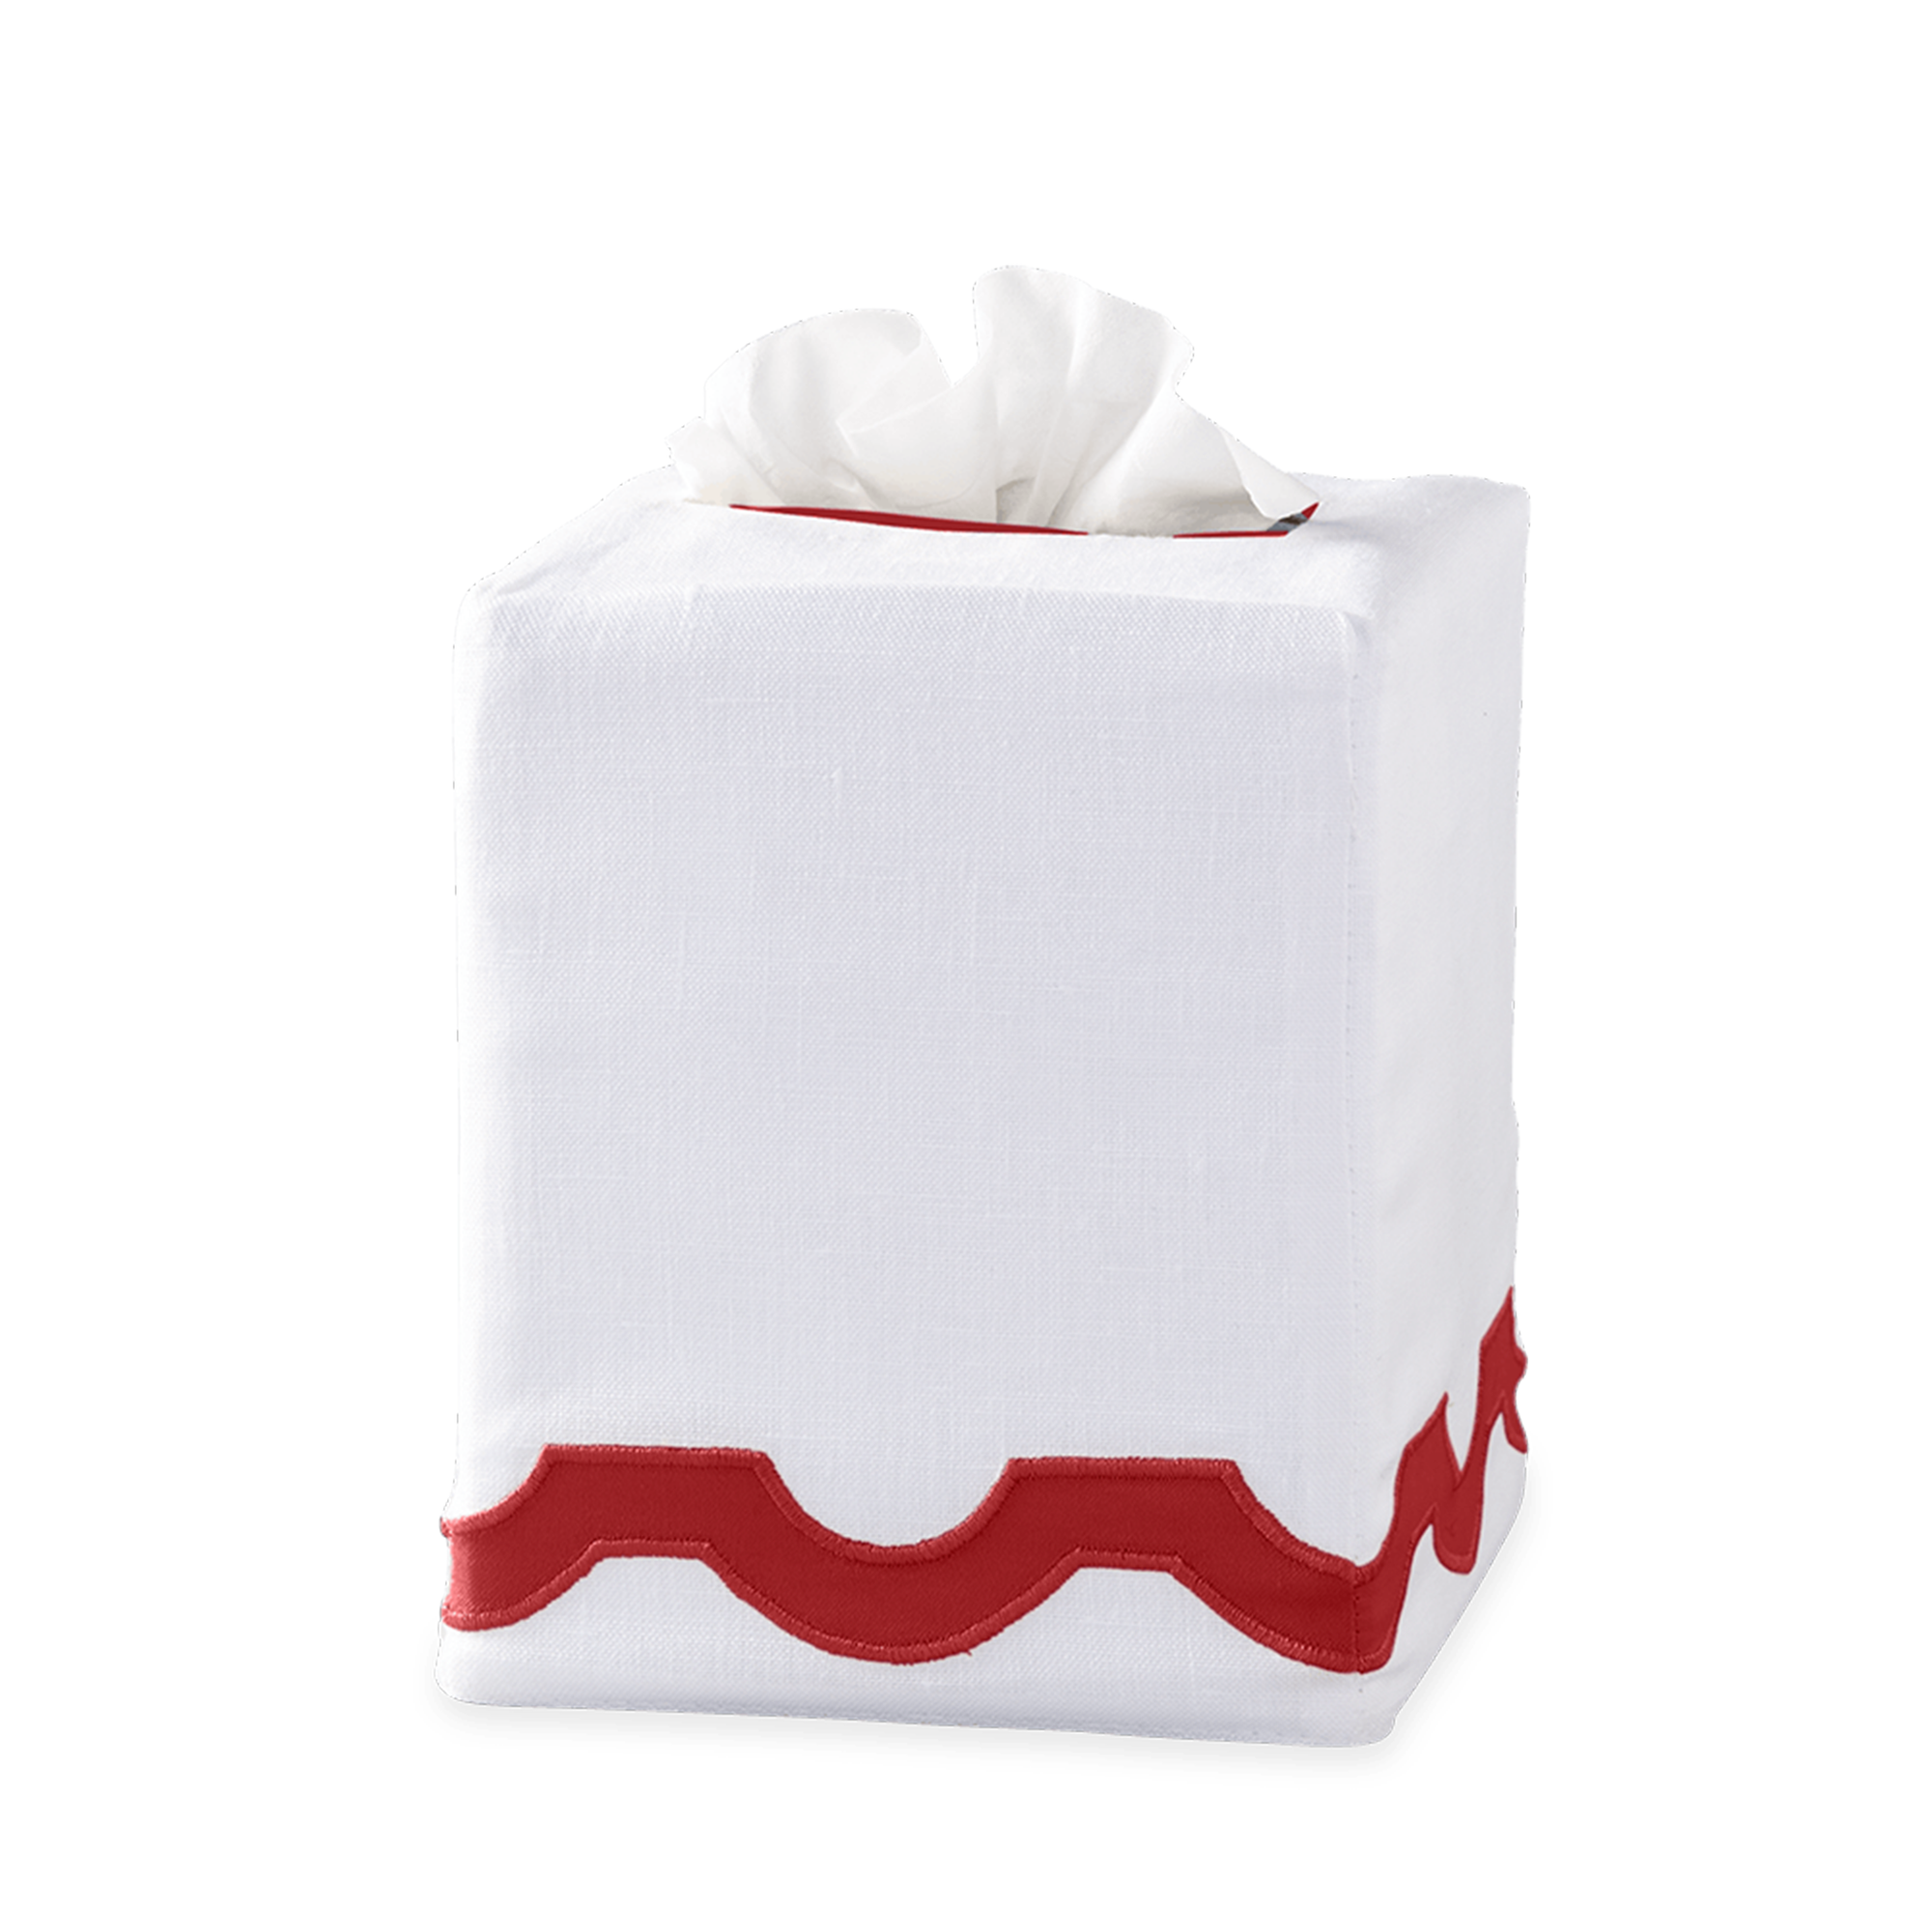 Silo Image of Matouk Mirasol Tissue Box Cover in Scarlet Color